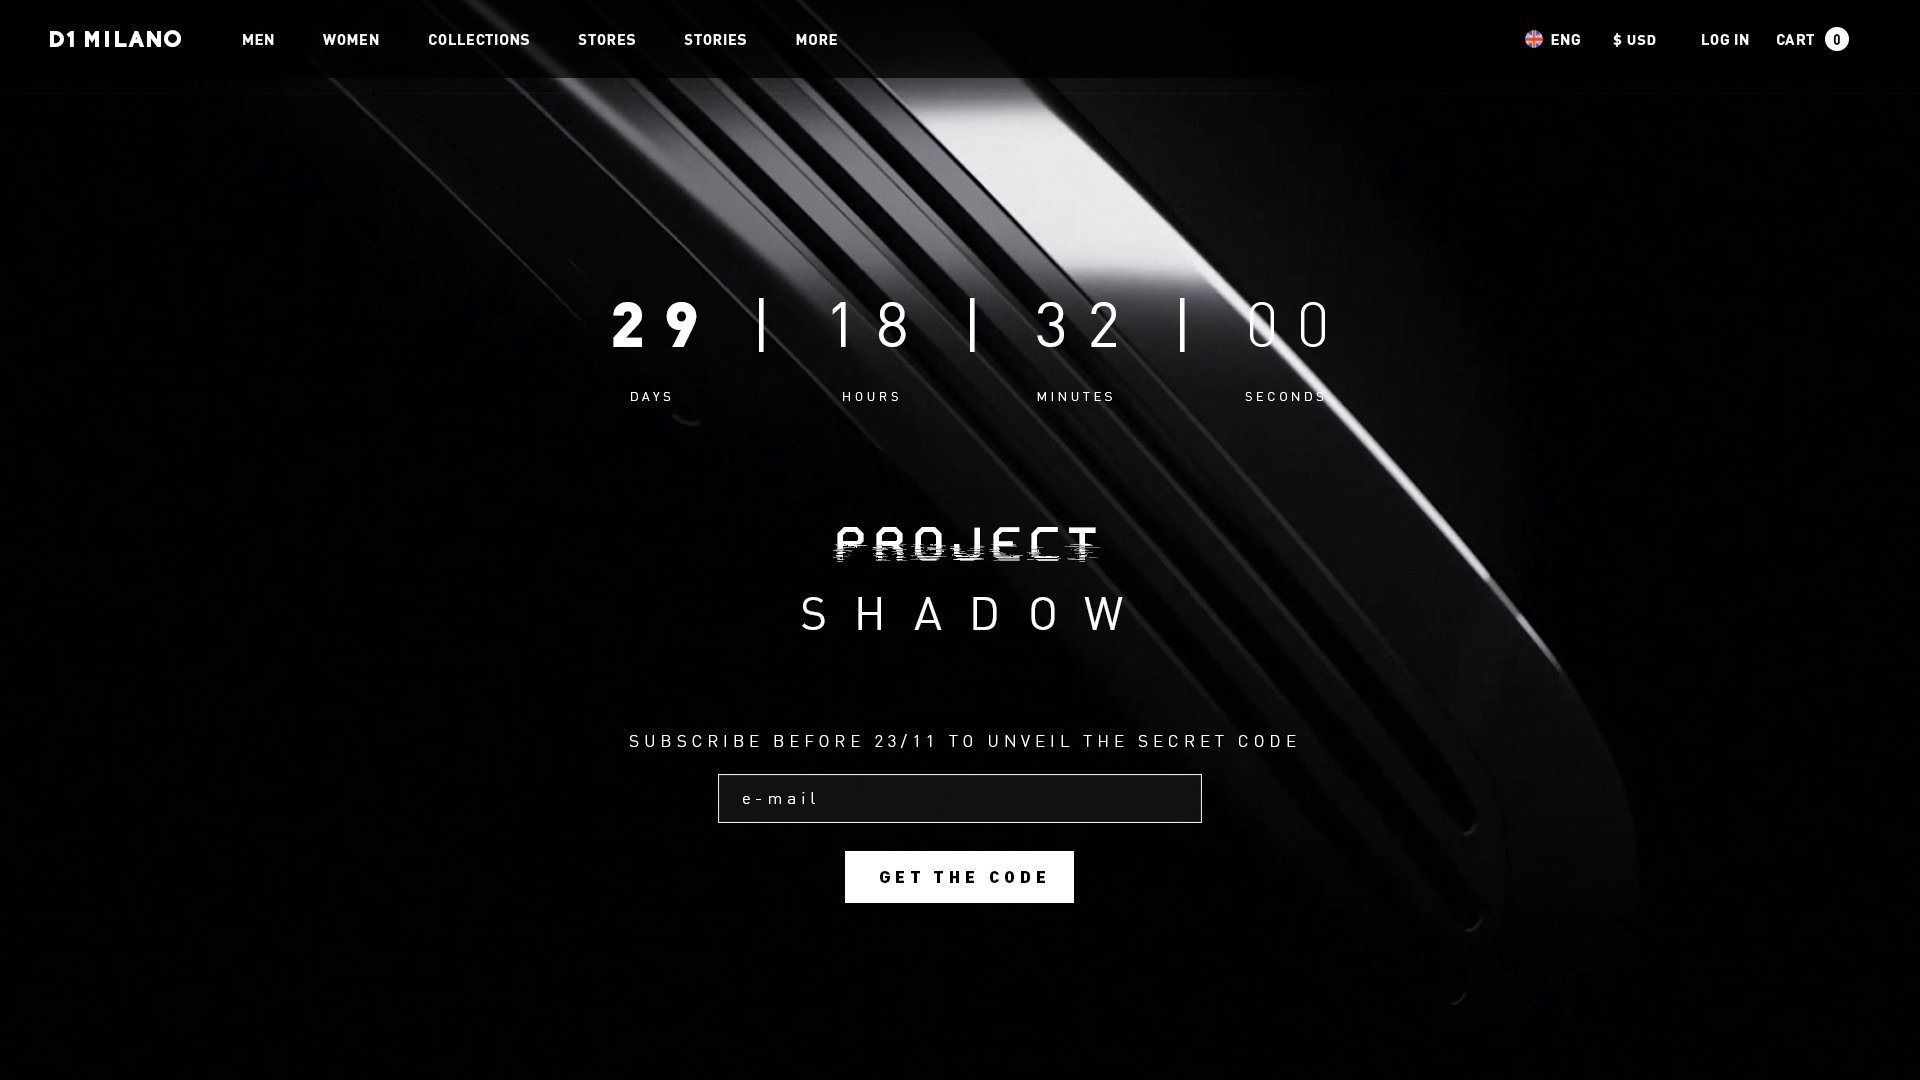 Pagina dell'edizione limitata "project shadow"